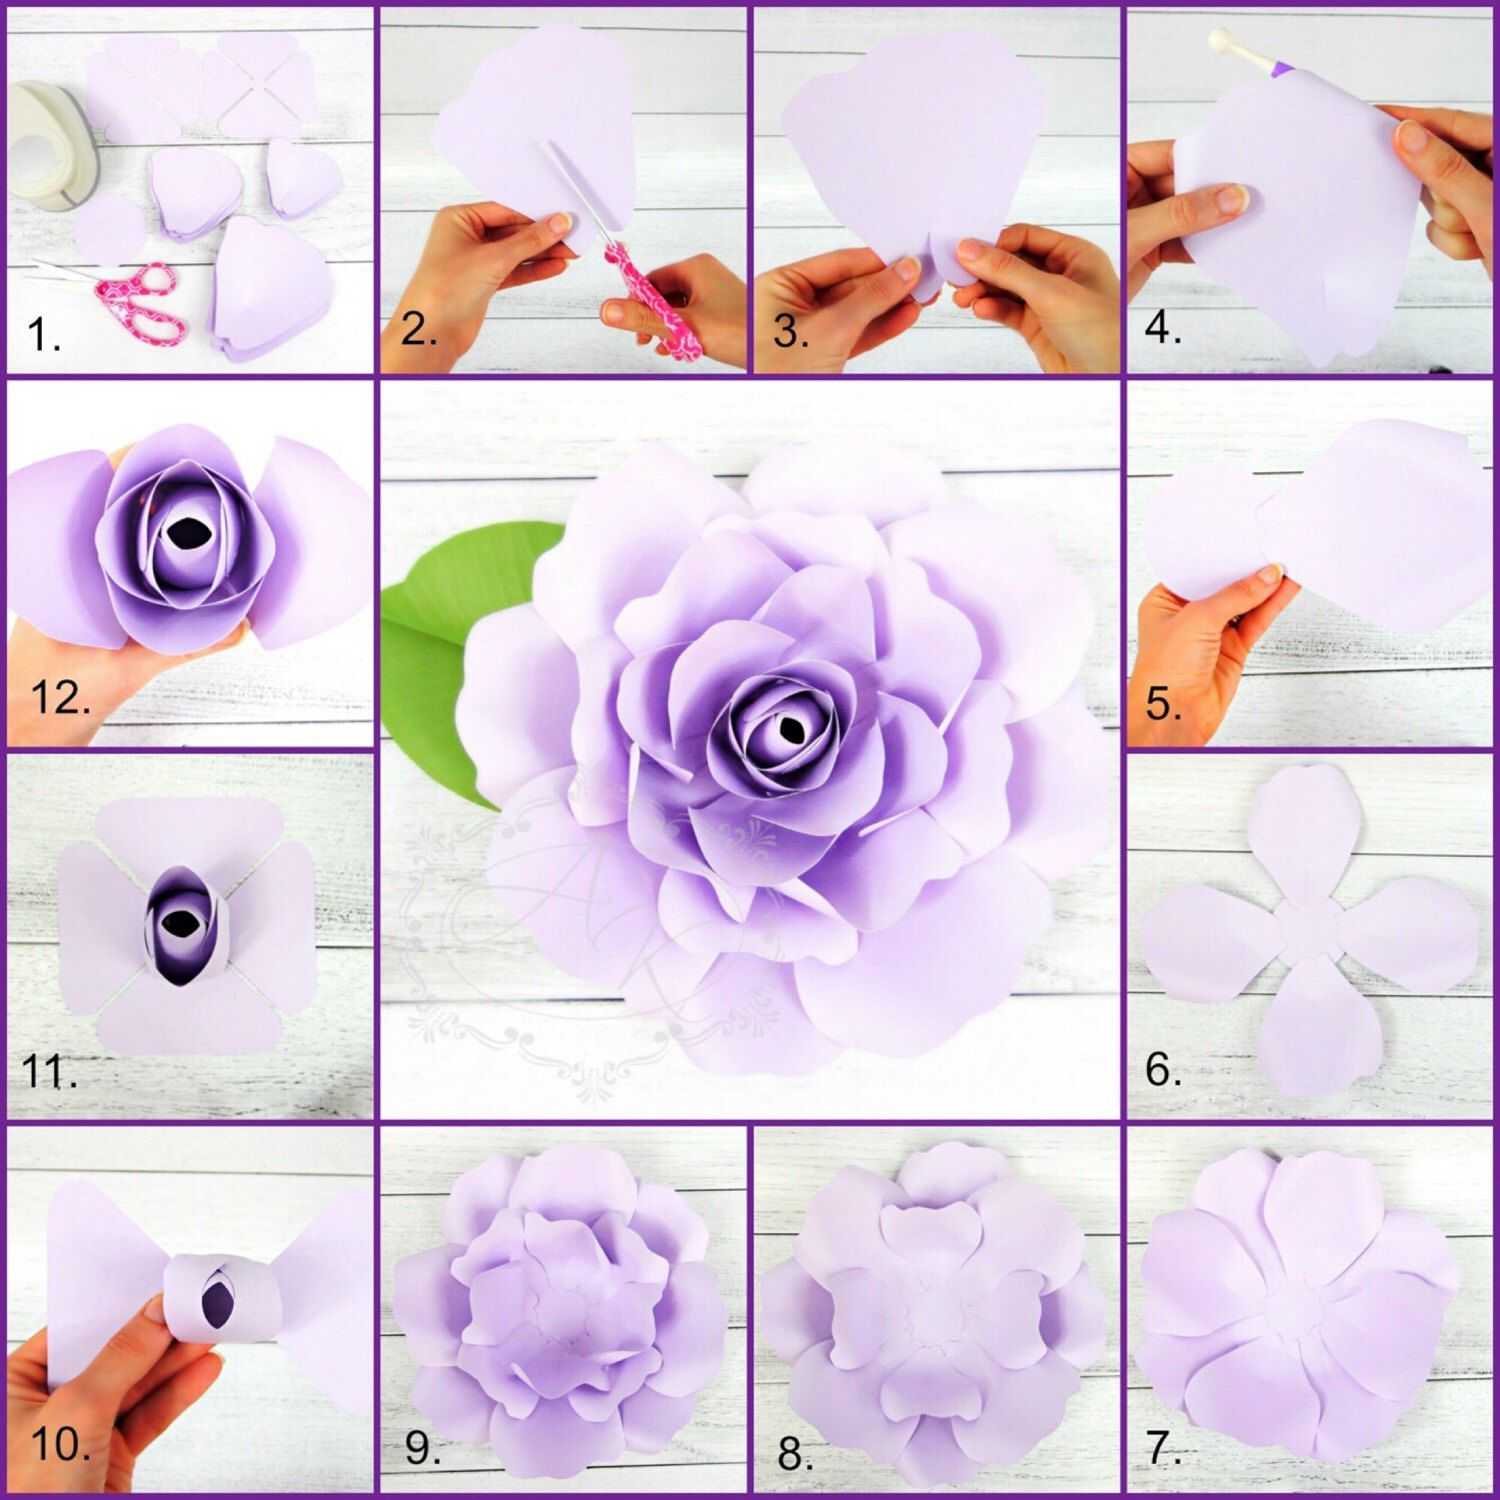 Большие цветы своими руками – подробная инструкция как сделать быстро и просто большие искусственные цветы (70 фото)